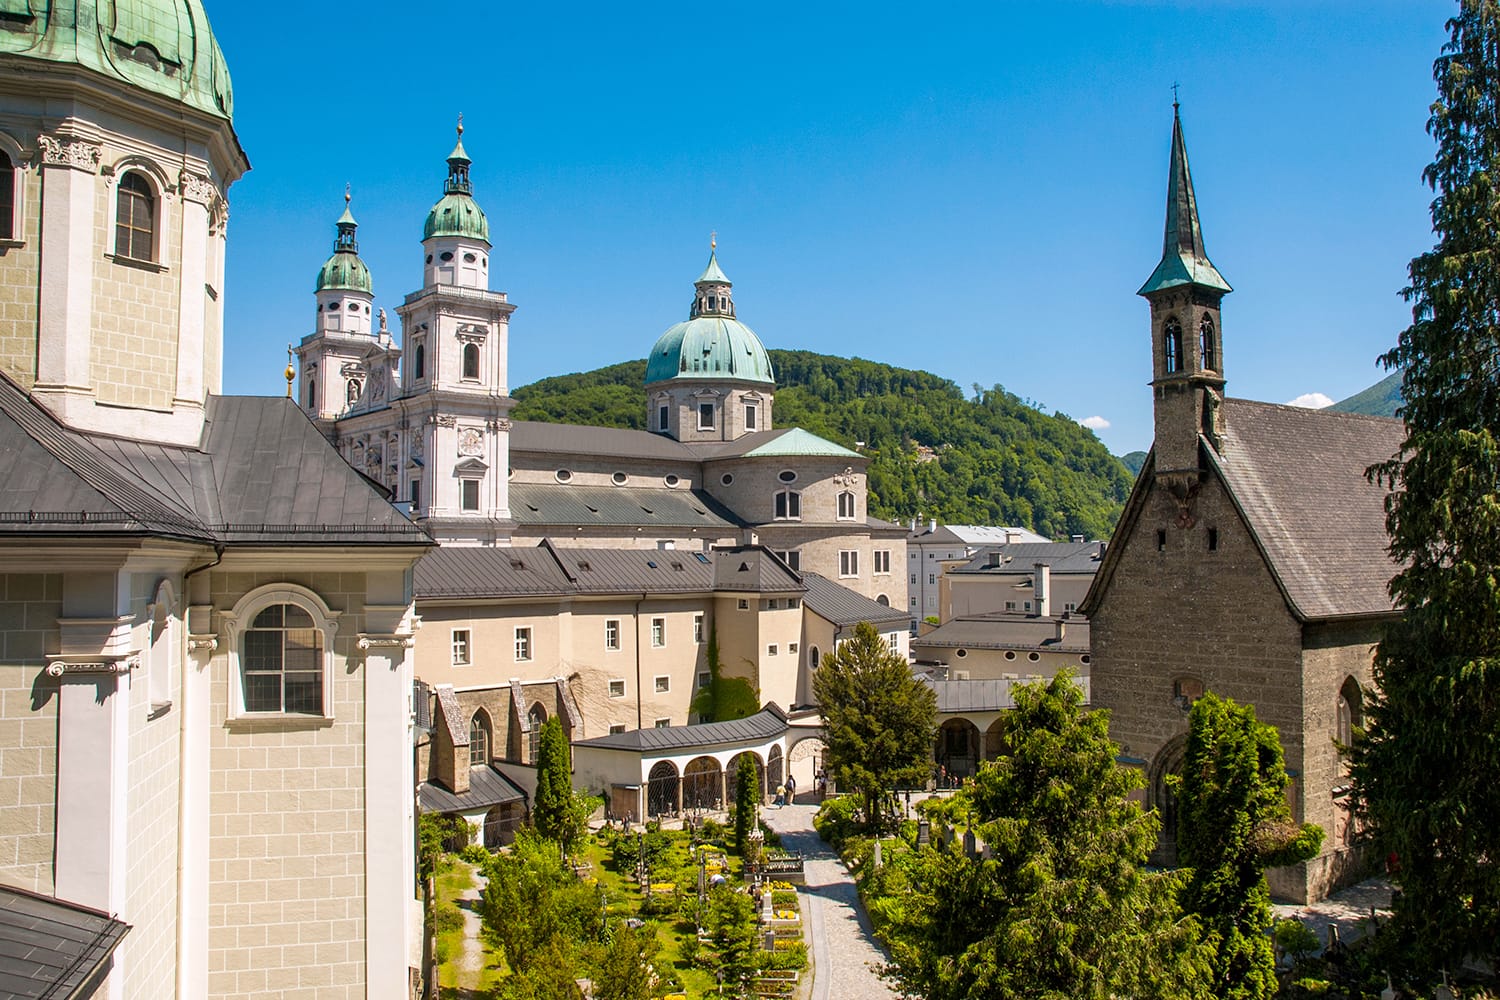 Θέα στον καθεδρικό ναό του Σάλτσμπουργκ, αφιερωμένος στον Άγιο Ρούπερτ και τον Άγιο Βεργίλιο.  Σάλτσμπουργκ, Αυστρία